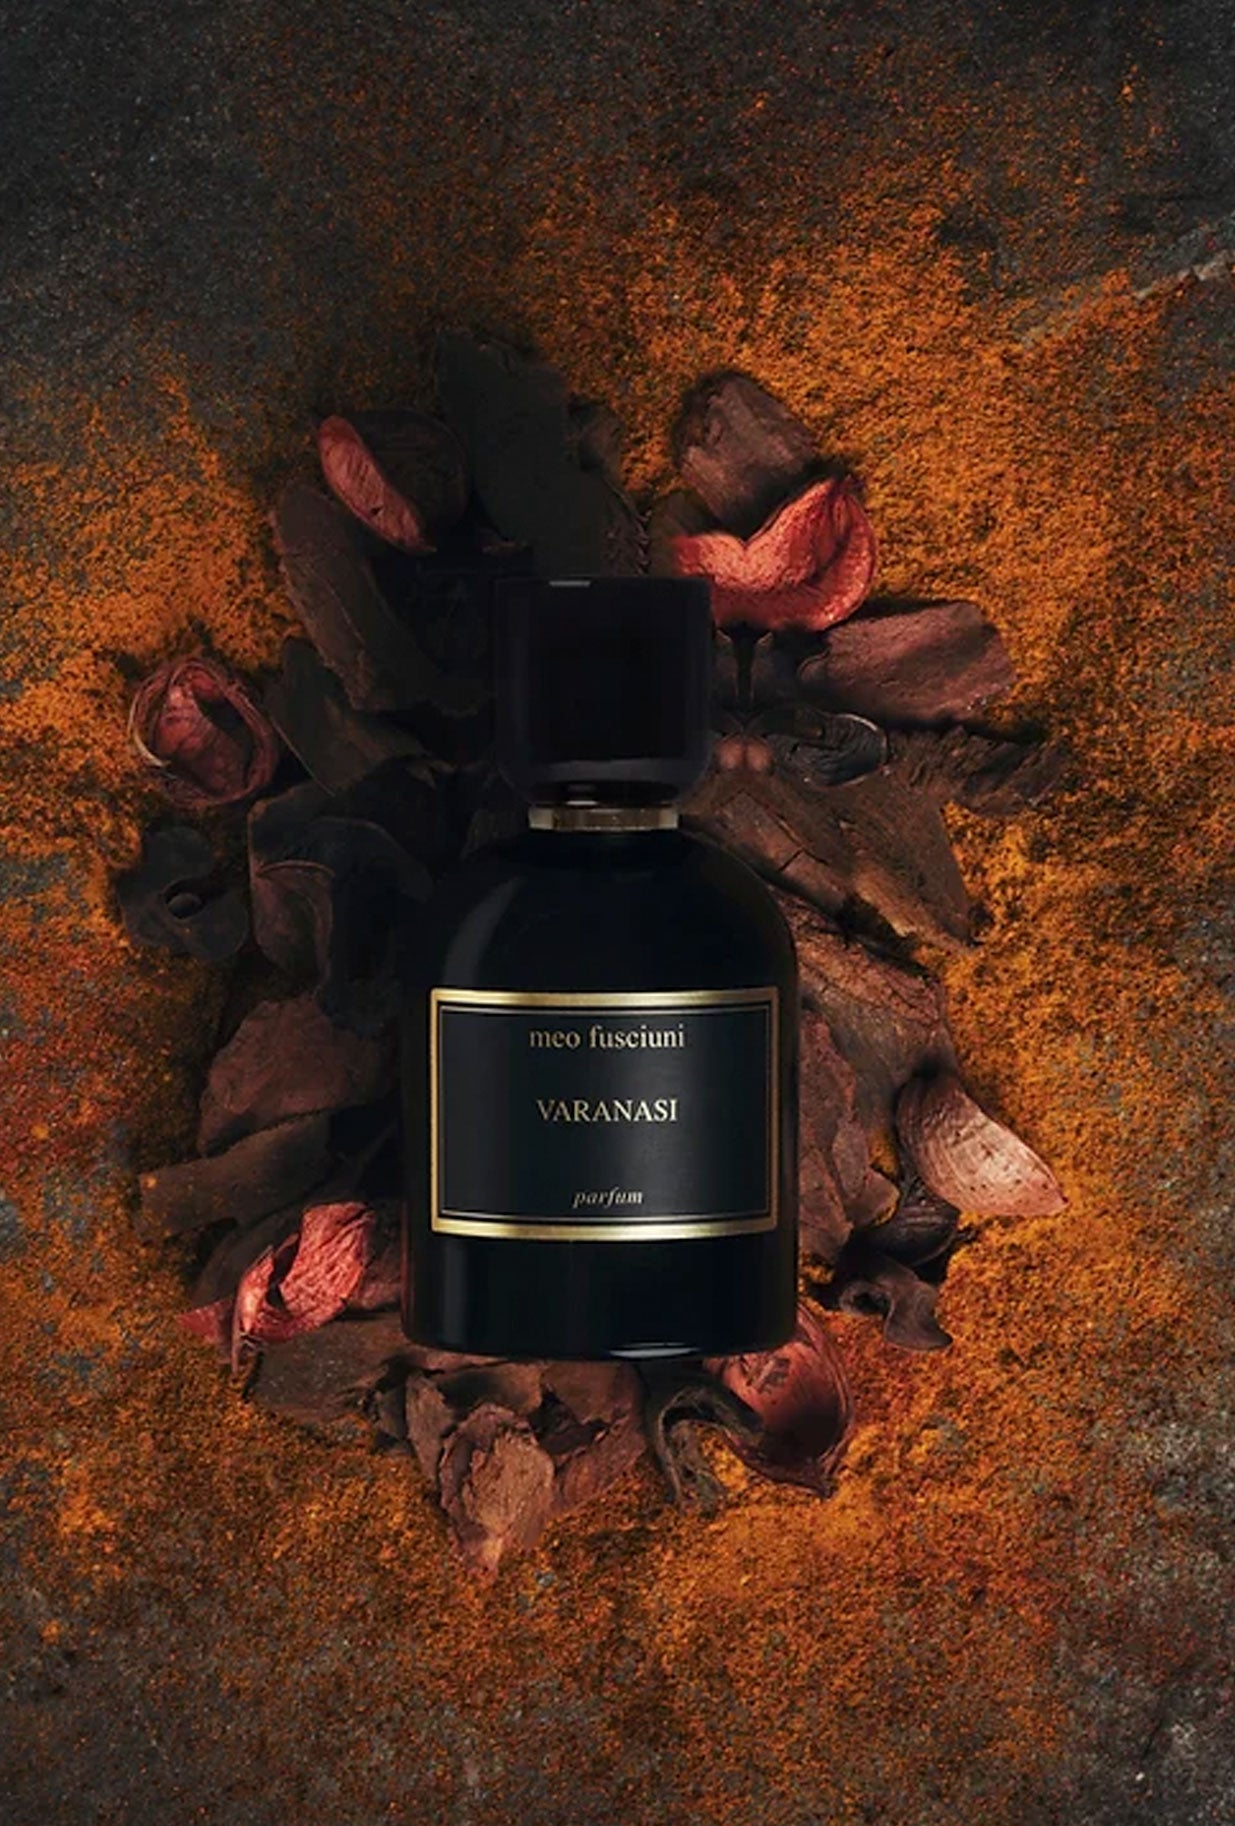 Varanasi - Parfum 100 ml- profumo - Meo Fusciuni - galax - galaxsarzana 